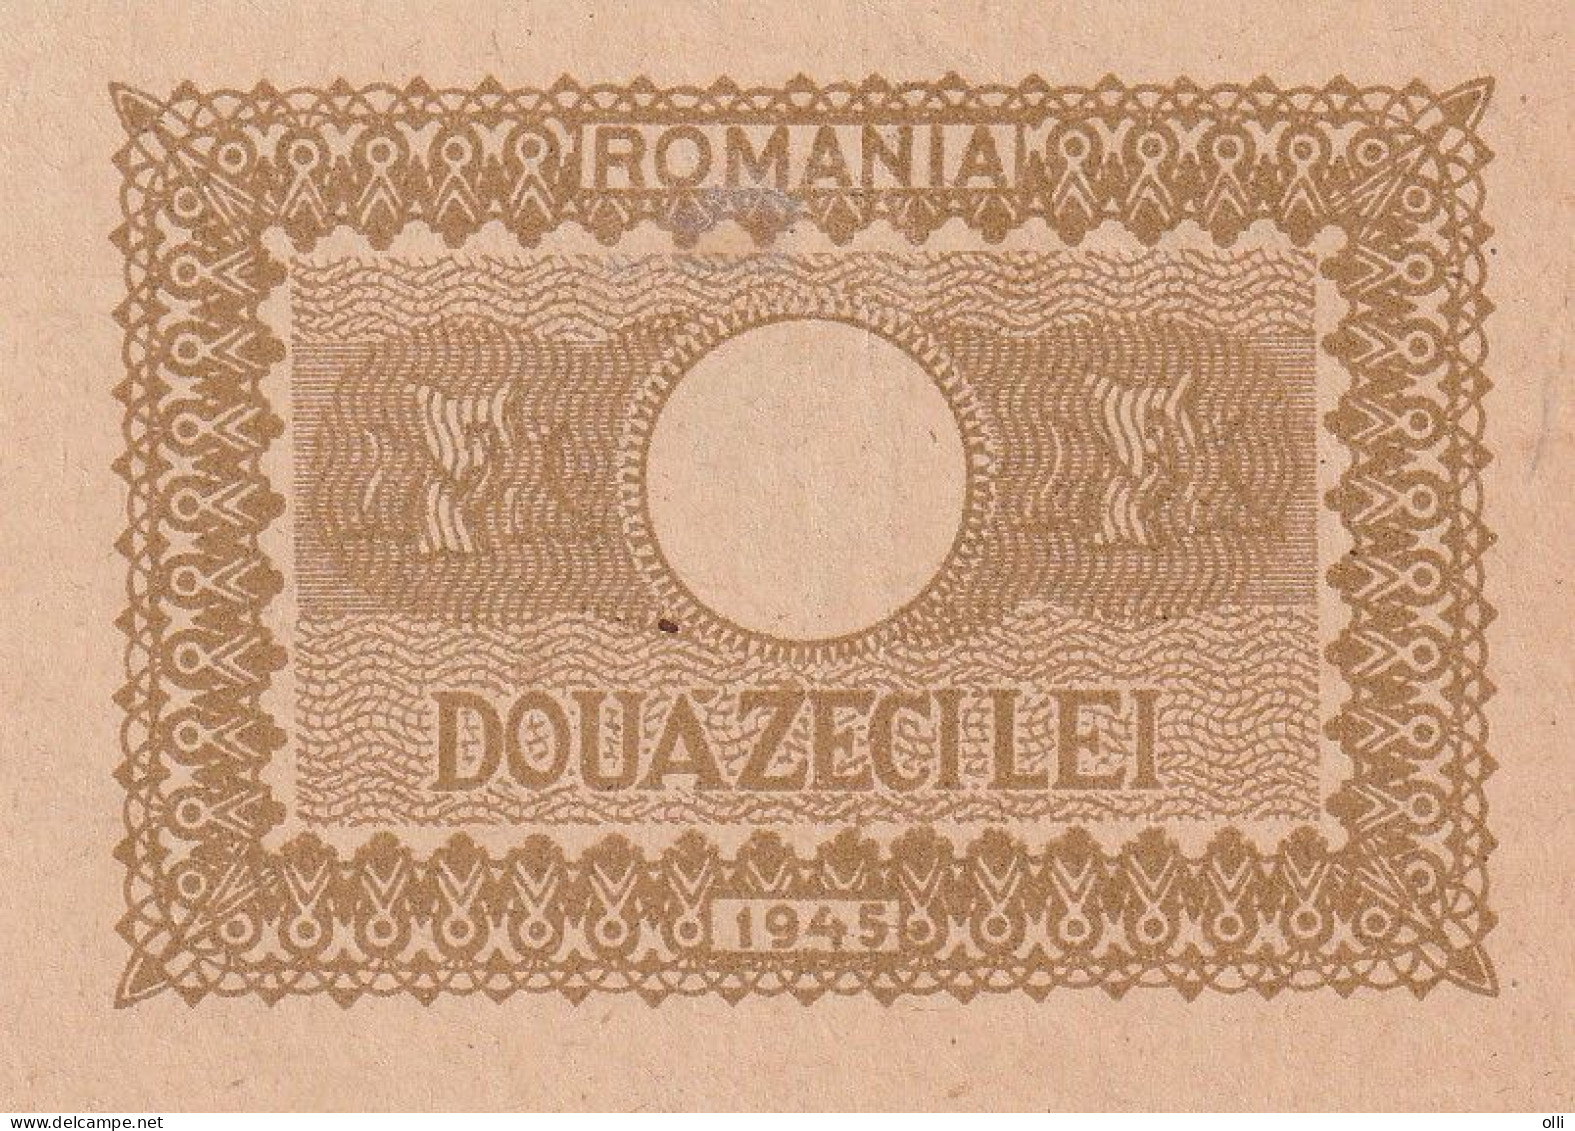 ROMANIA 20 LEI  1945 P-76 UNC - Rumänien